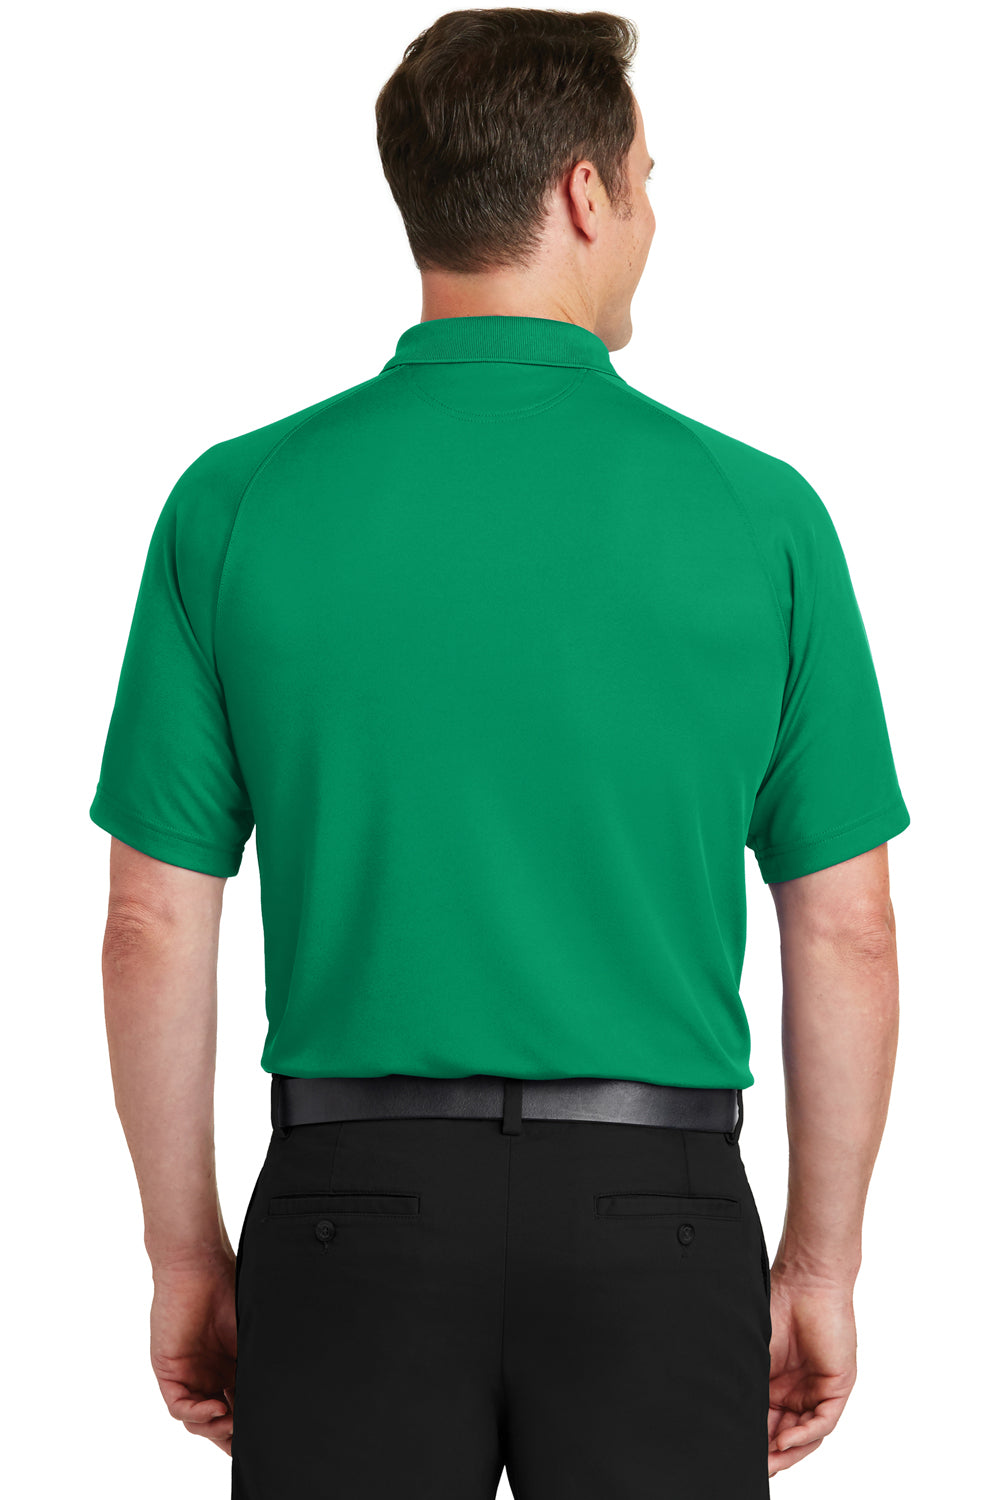 Sport-Tek T475 Mens Dry Zone Moisture Wicking Short Sleeve Polo Shirt Kelly Green Back